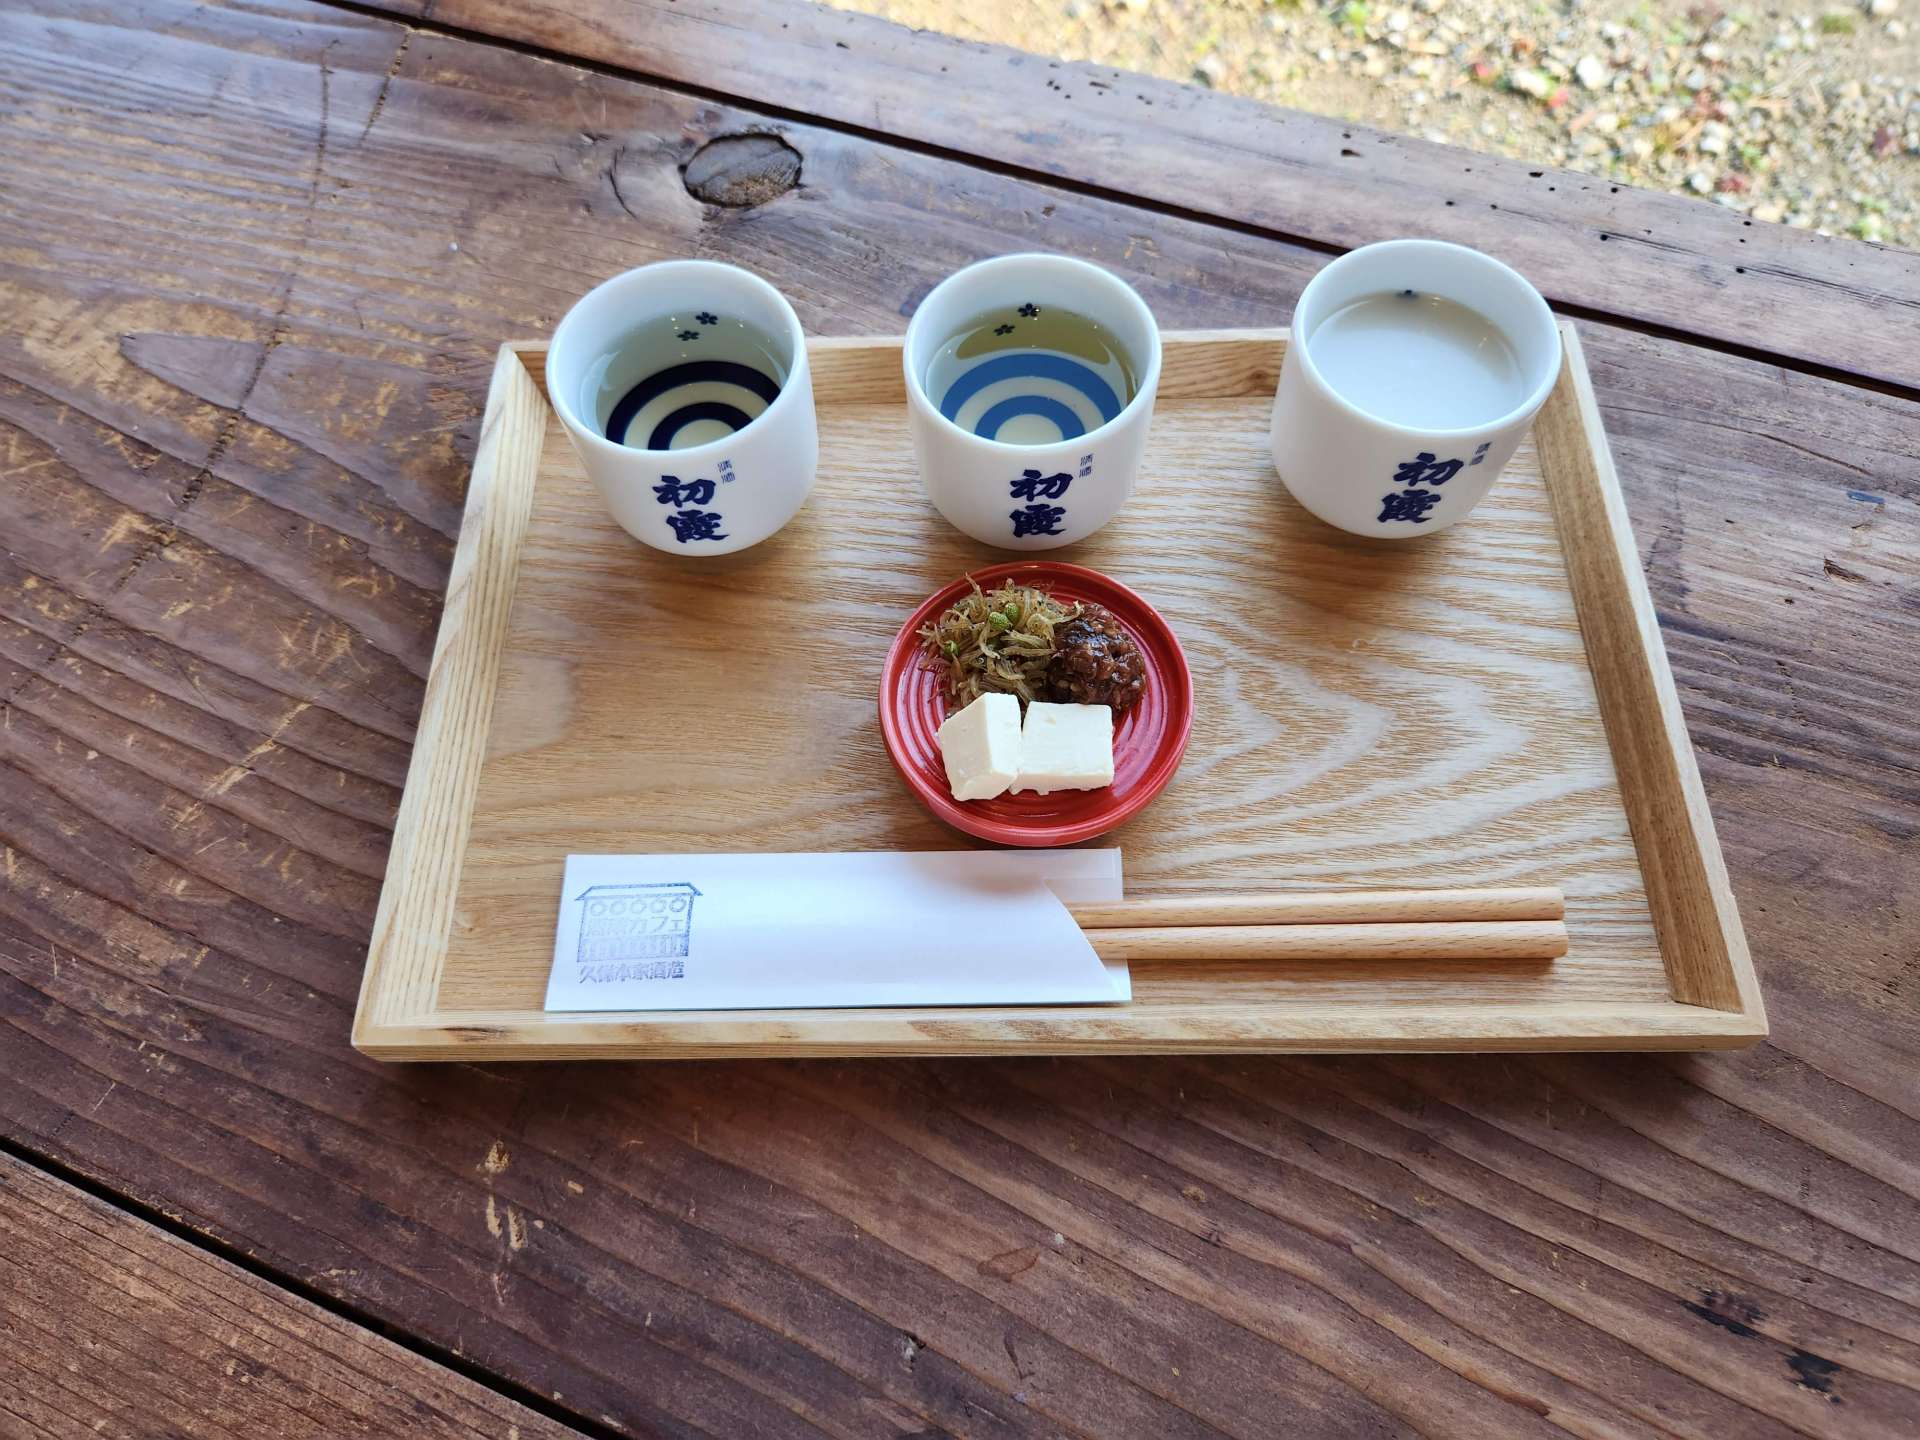 Omakase 3-type sake tasting set. With appetizers 1,200yen, sake only 1,000yen